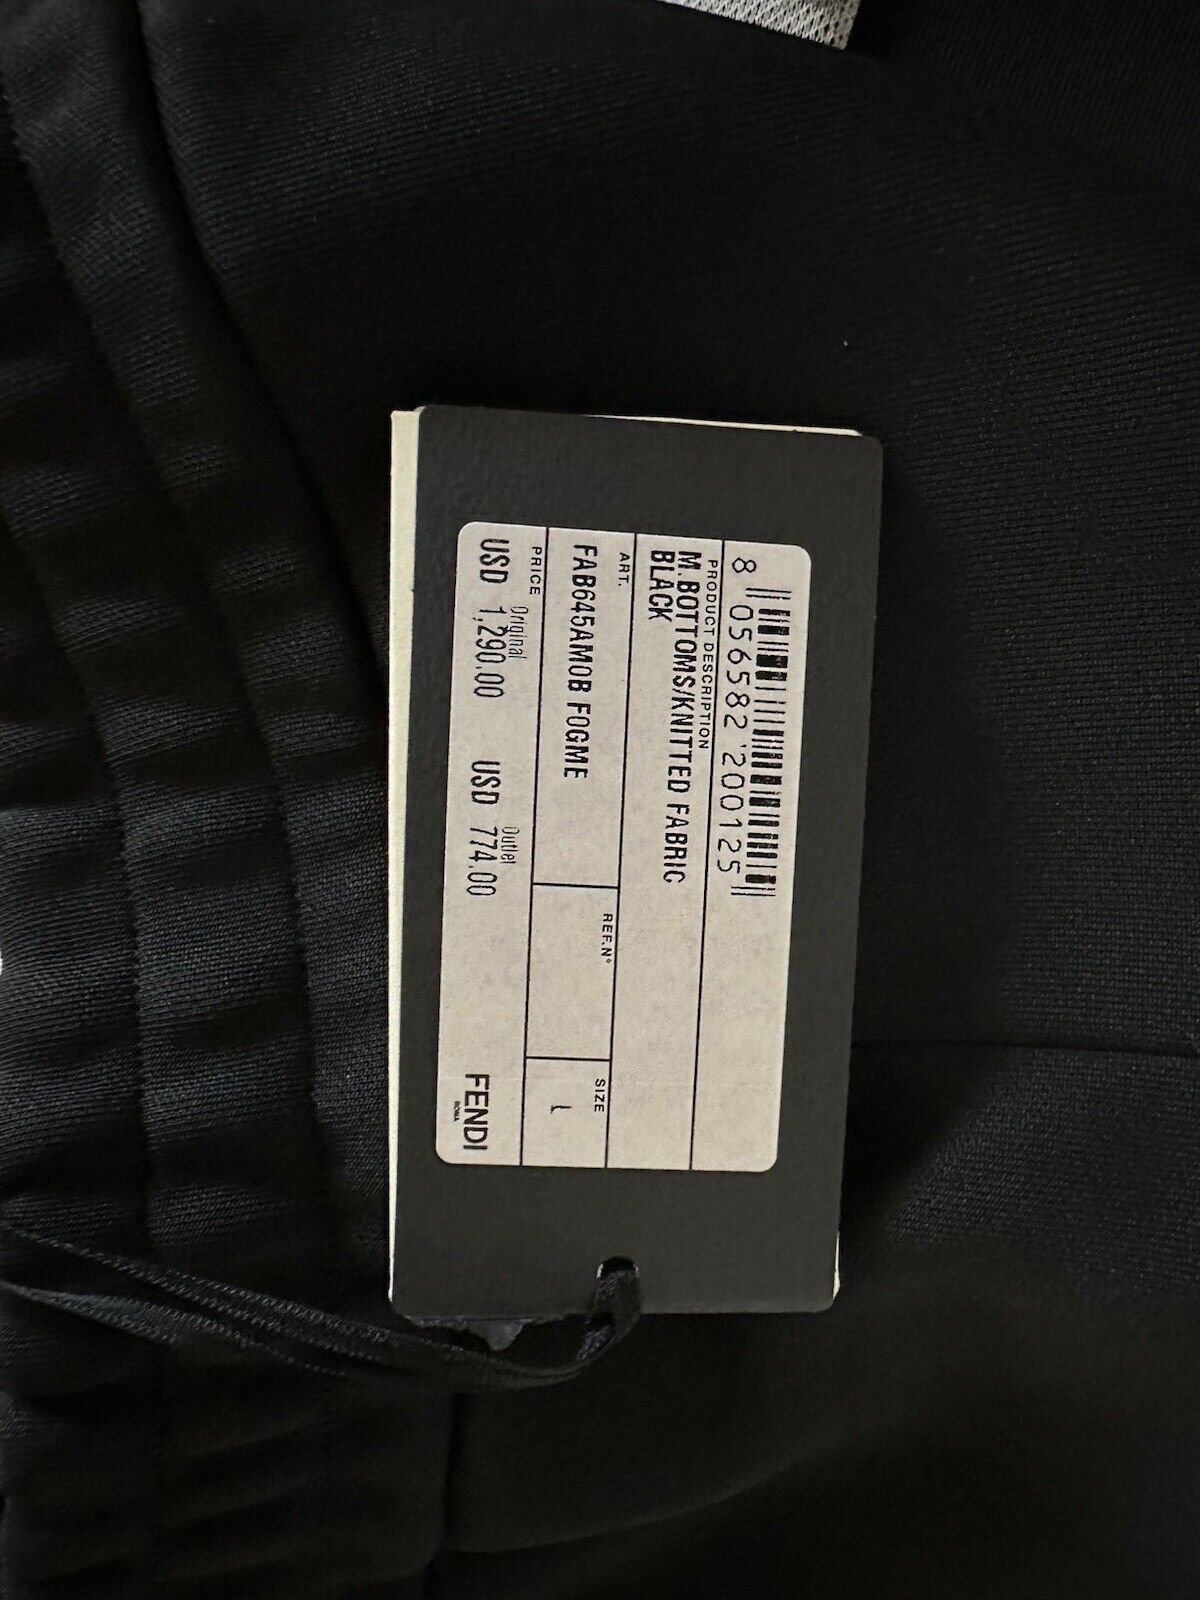 Neu mit Etikett: 1490 $ Fendi FF Lässige Hose aus Polyester/Baumwolle Schwarz Größe L FAB645 Italien 